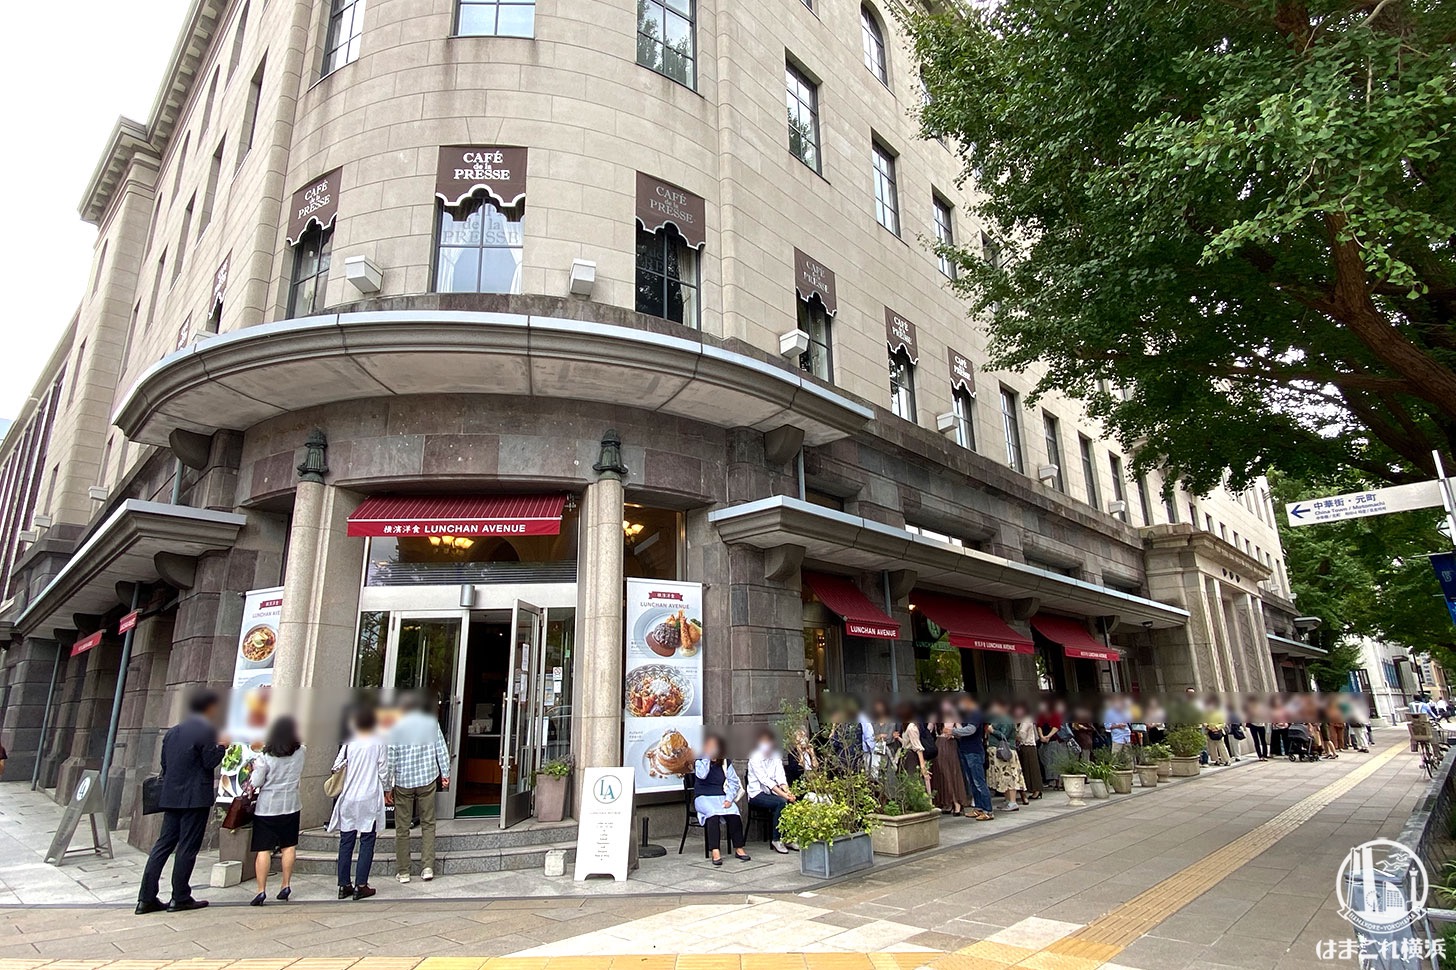 ランチャン アヴェニューが2020年9月30日に閉店 横浜・日本大通りの洋食店